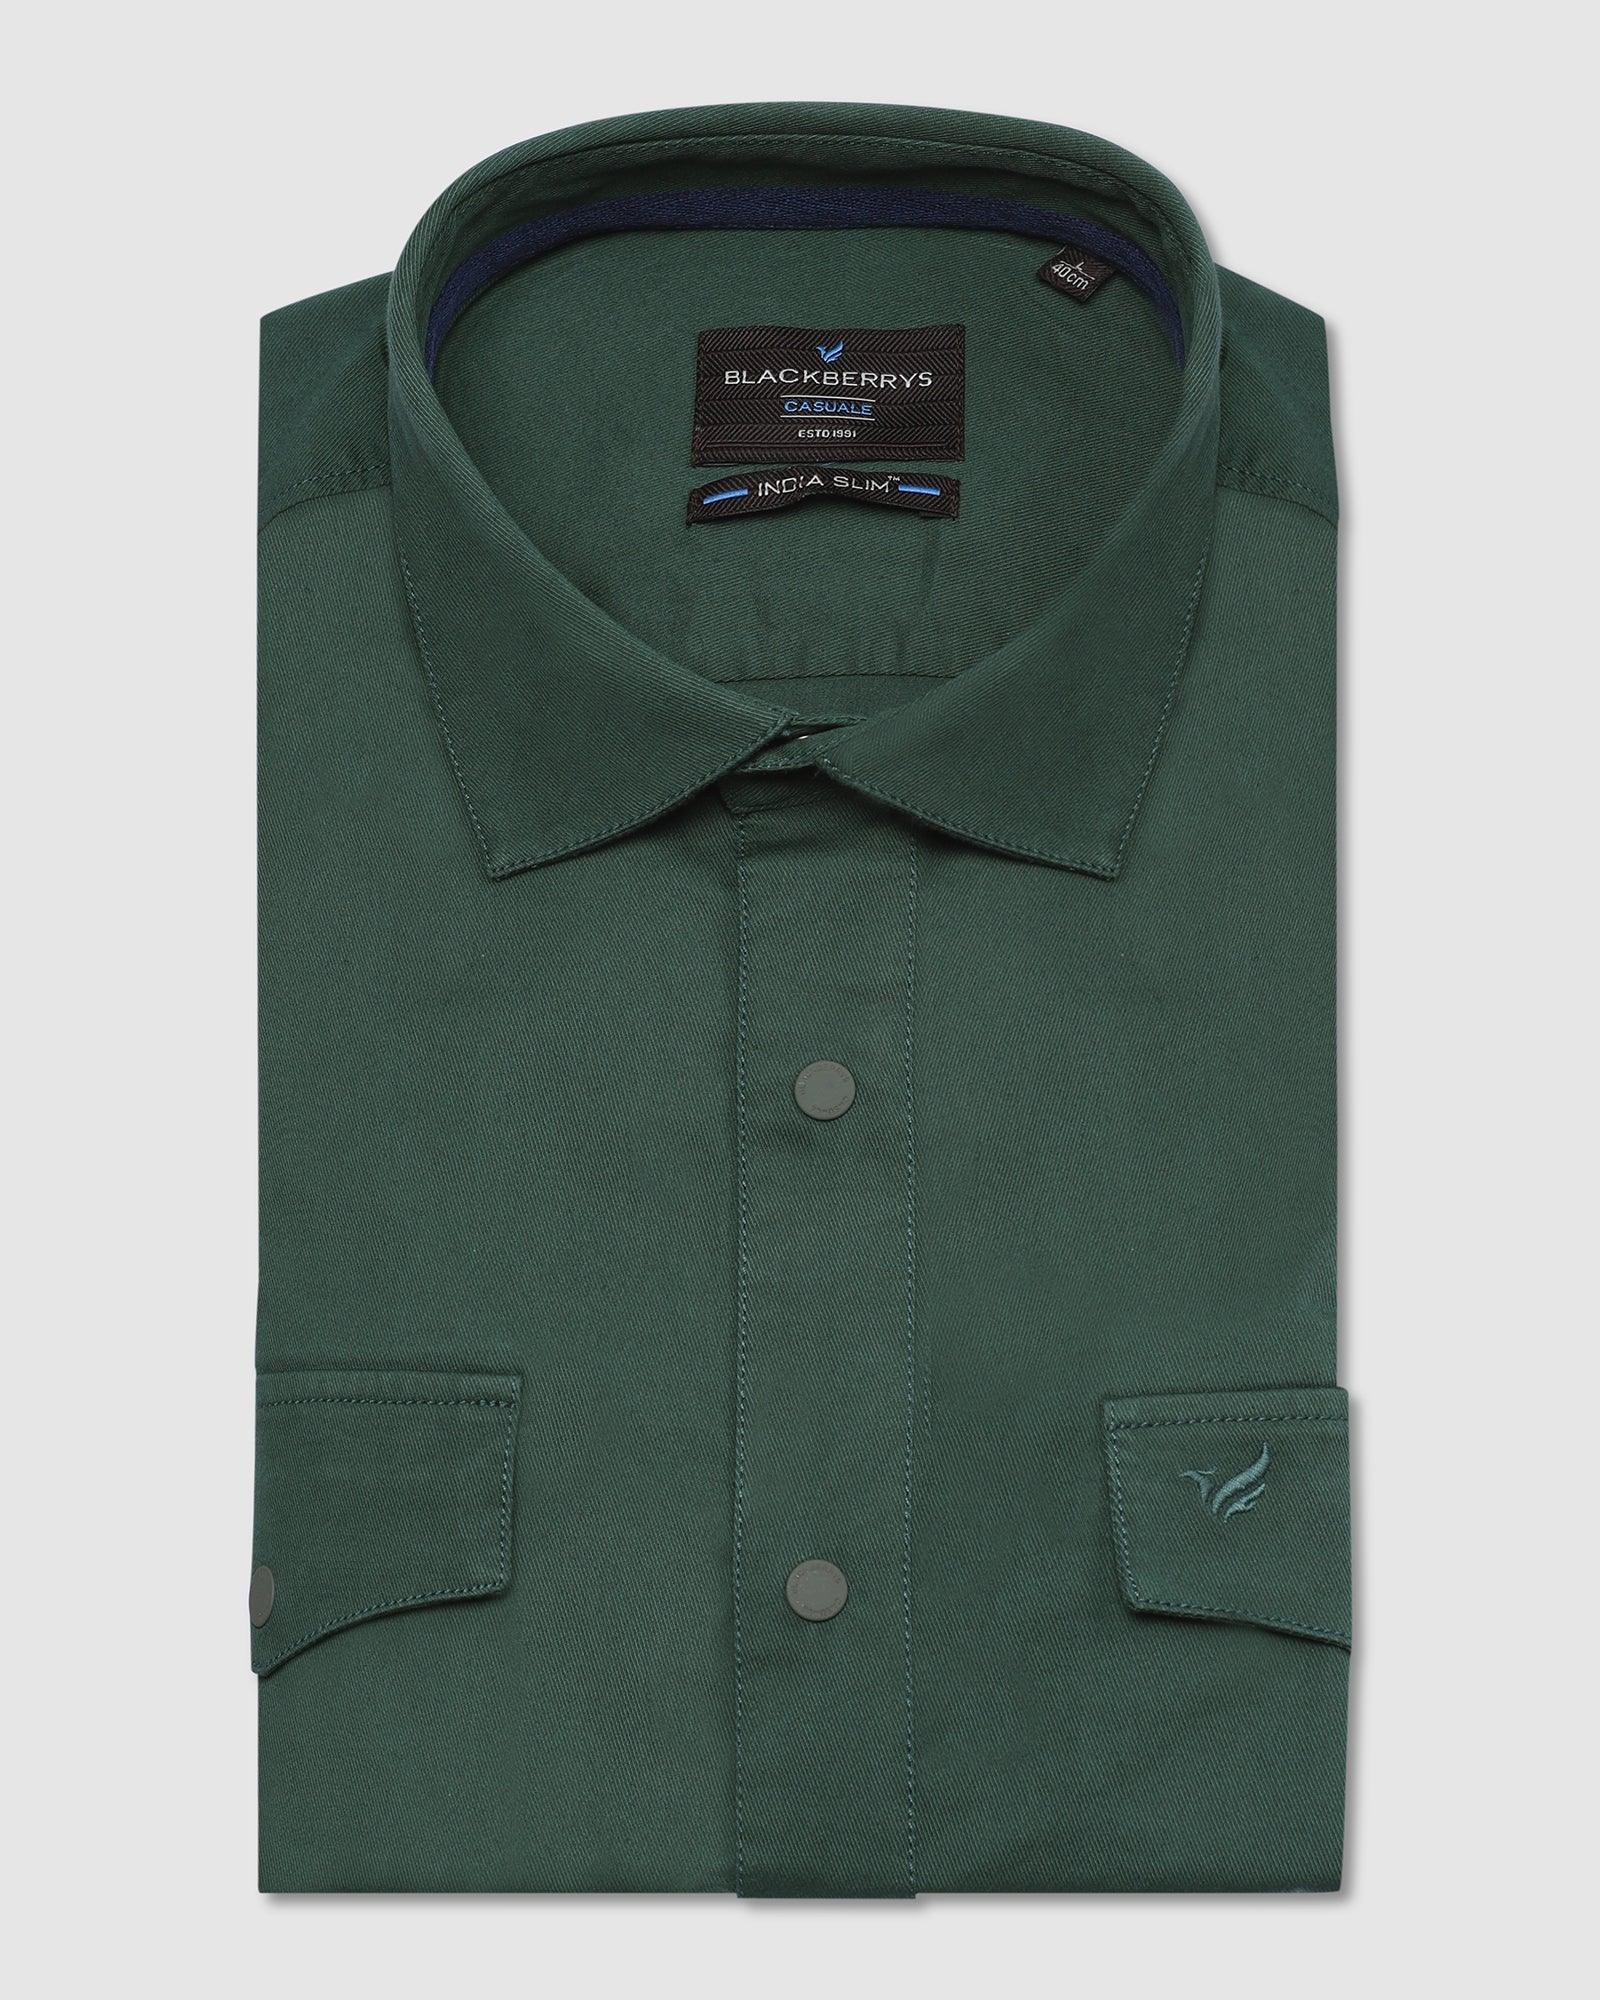 Casual Green Solid Shirt - Beckham